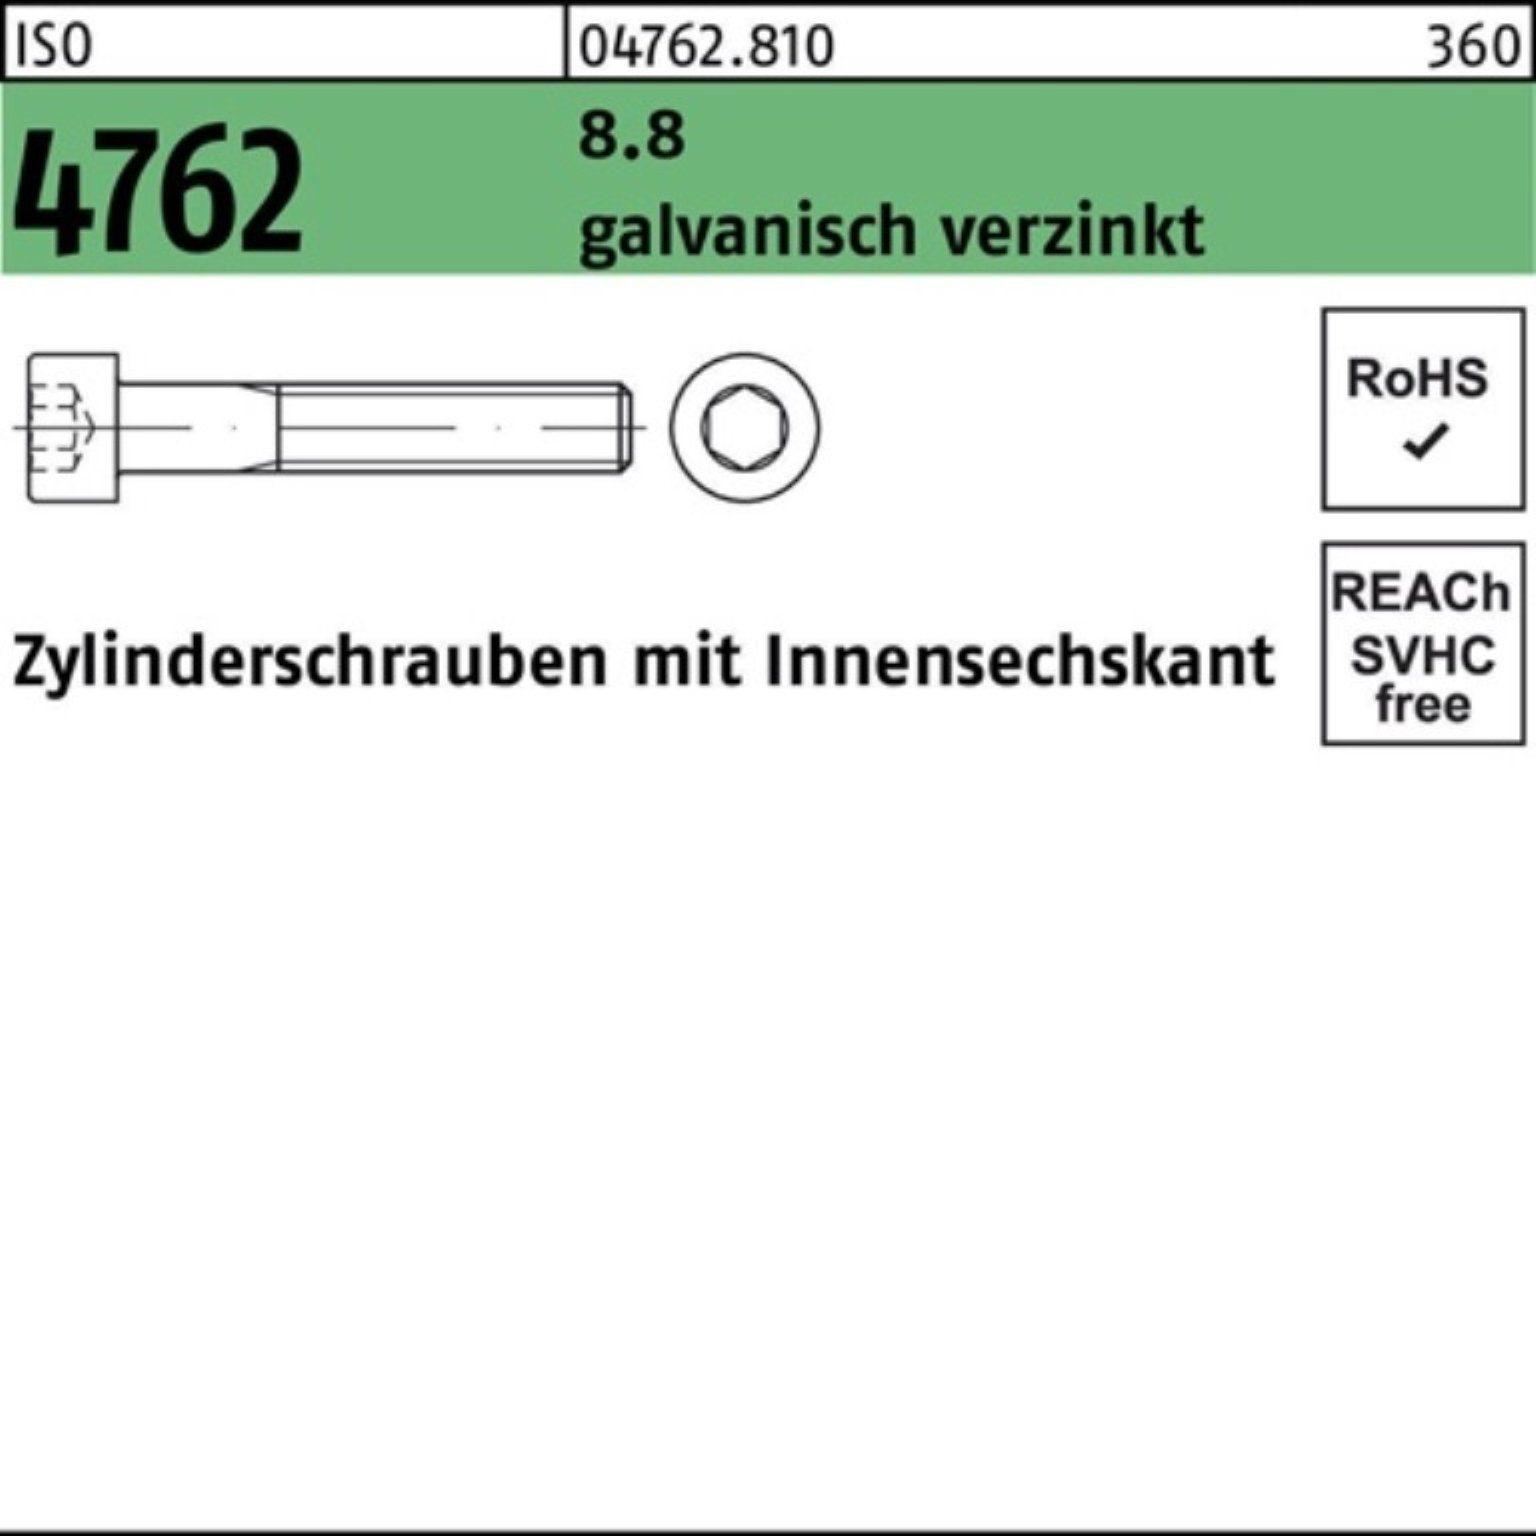 Reyher Zylinderschraube 100er galv.verz. 1 8.8 Innen-6kt 4762 ISO Zylinderschraube M10x90 Pack